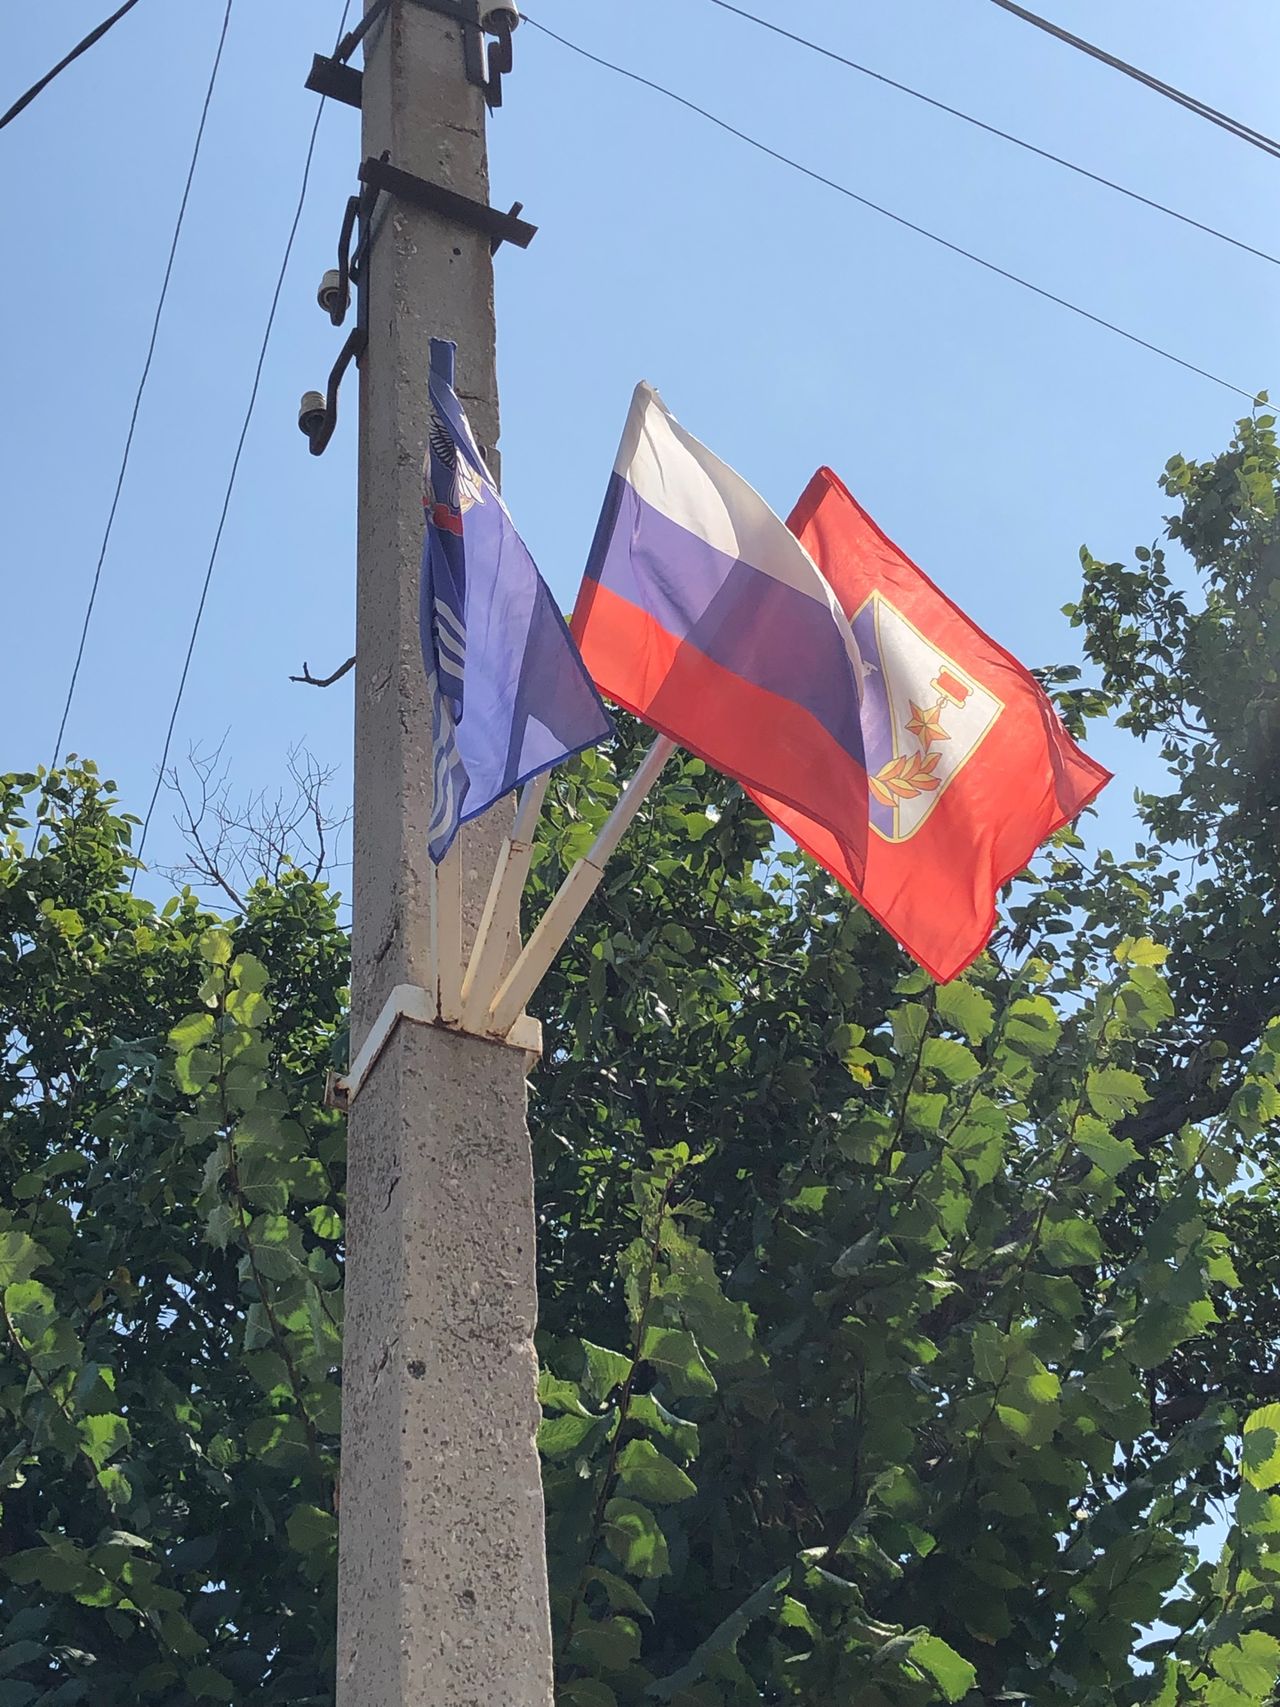 Pozdravlyaem s Dnem Gosudarstvennogo flaga Rossijskoj Federacii  01